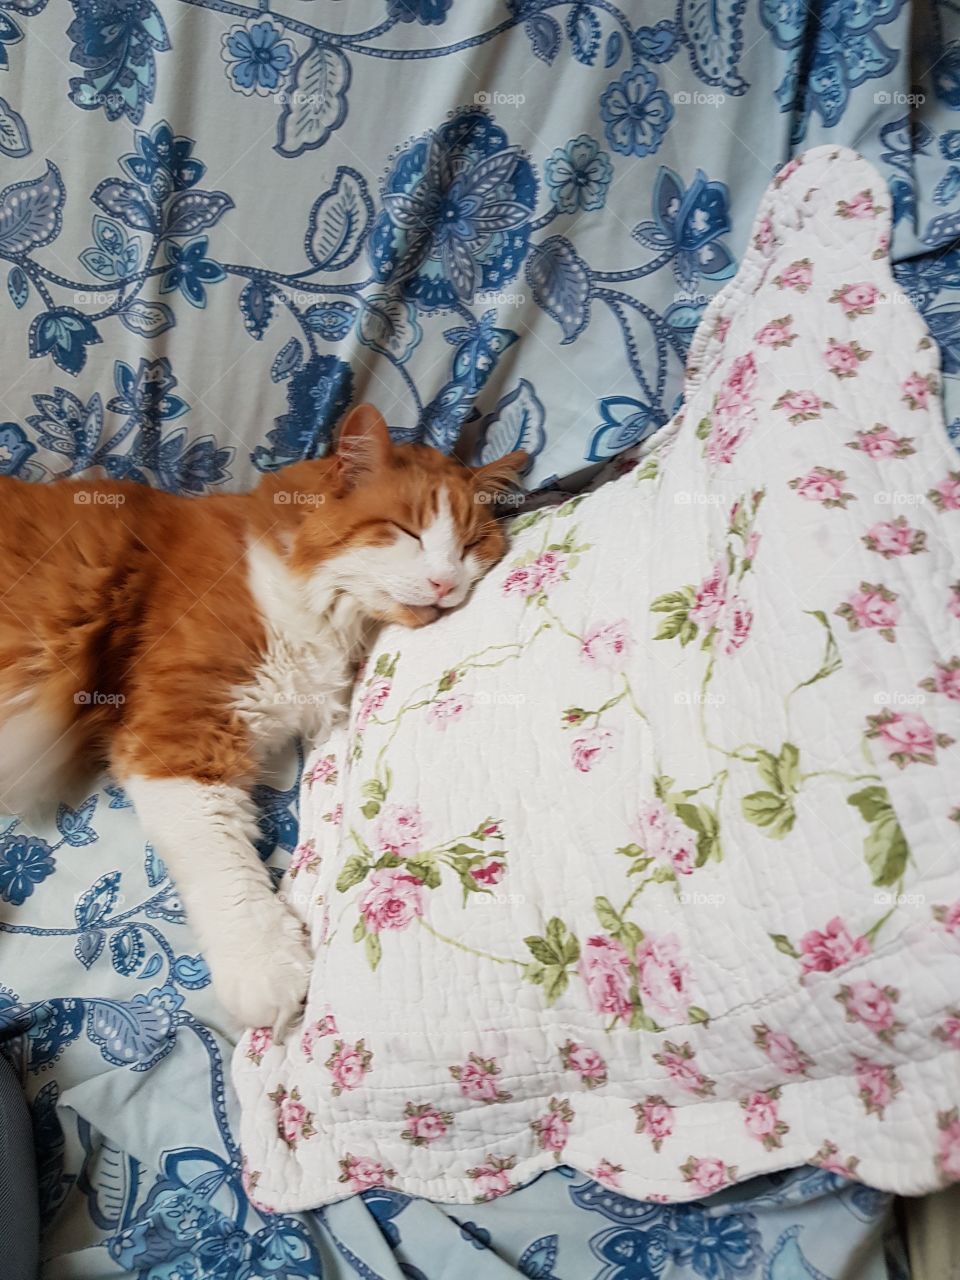 Cat sleeping on a pillow.